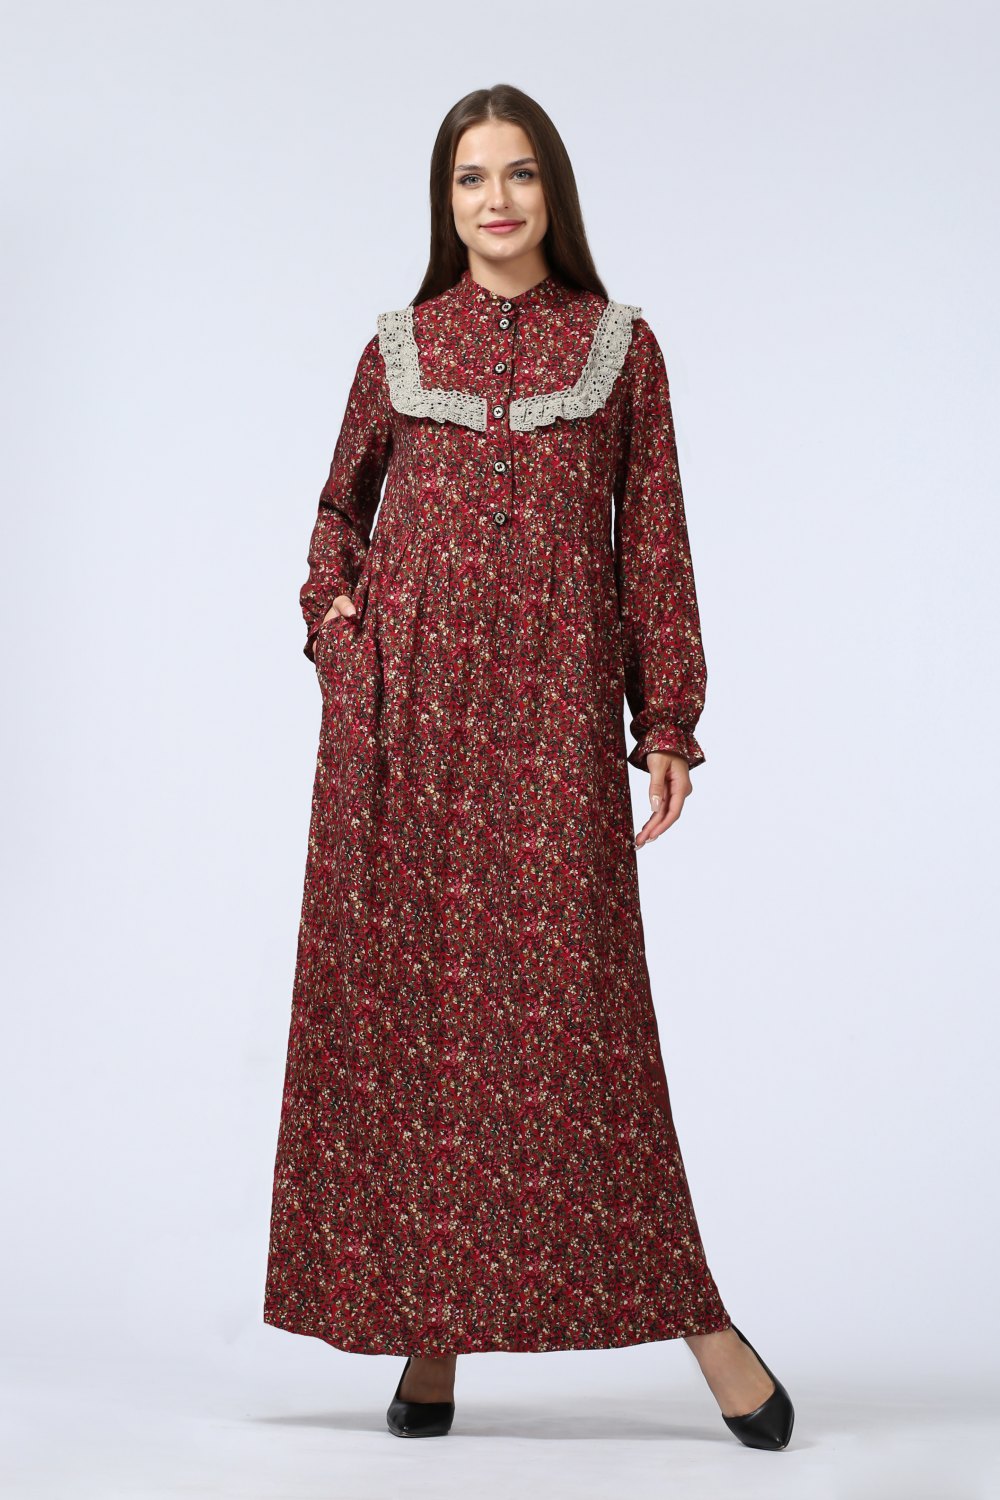 Платье женское "Дарья" длинная модель 675/4 цвет: бордовые цветочки